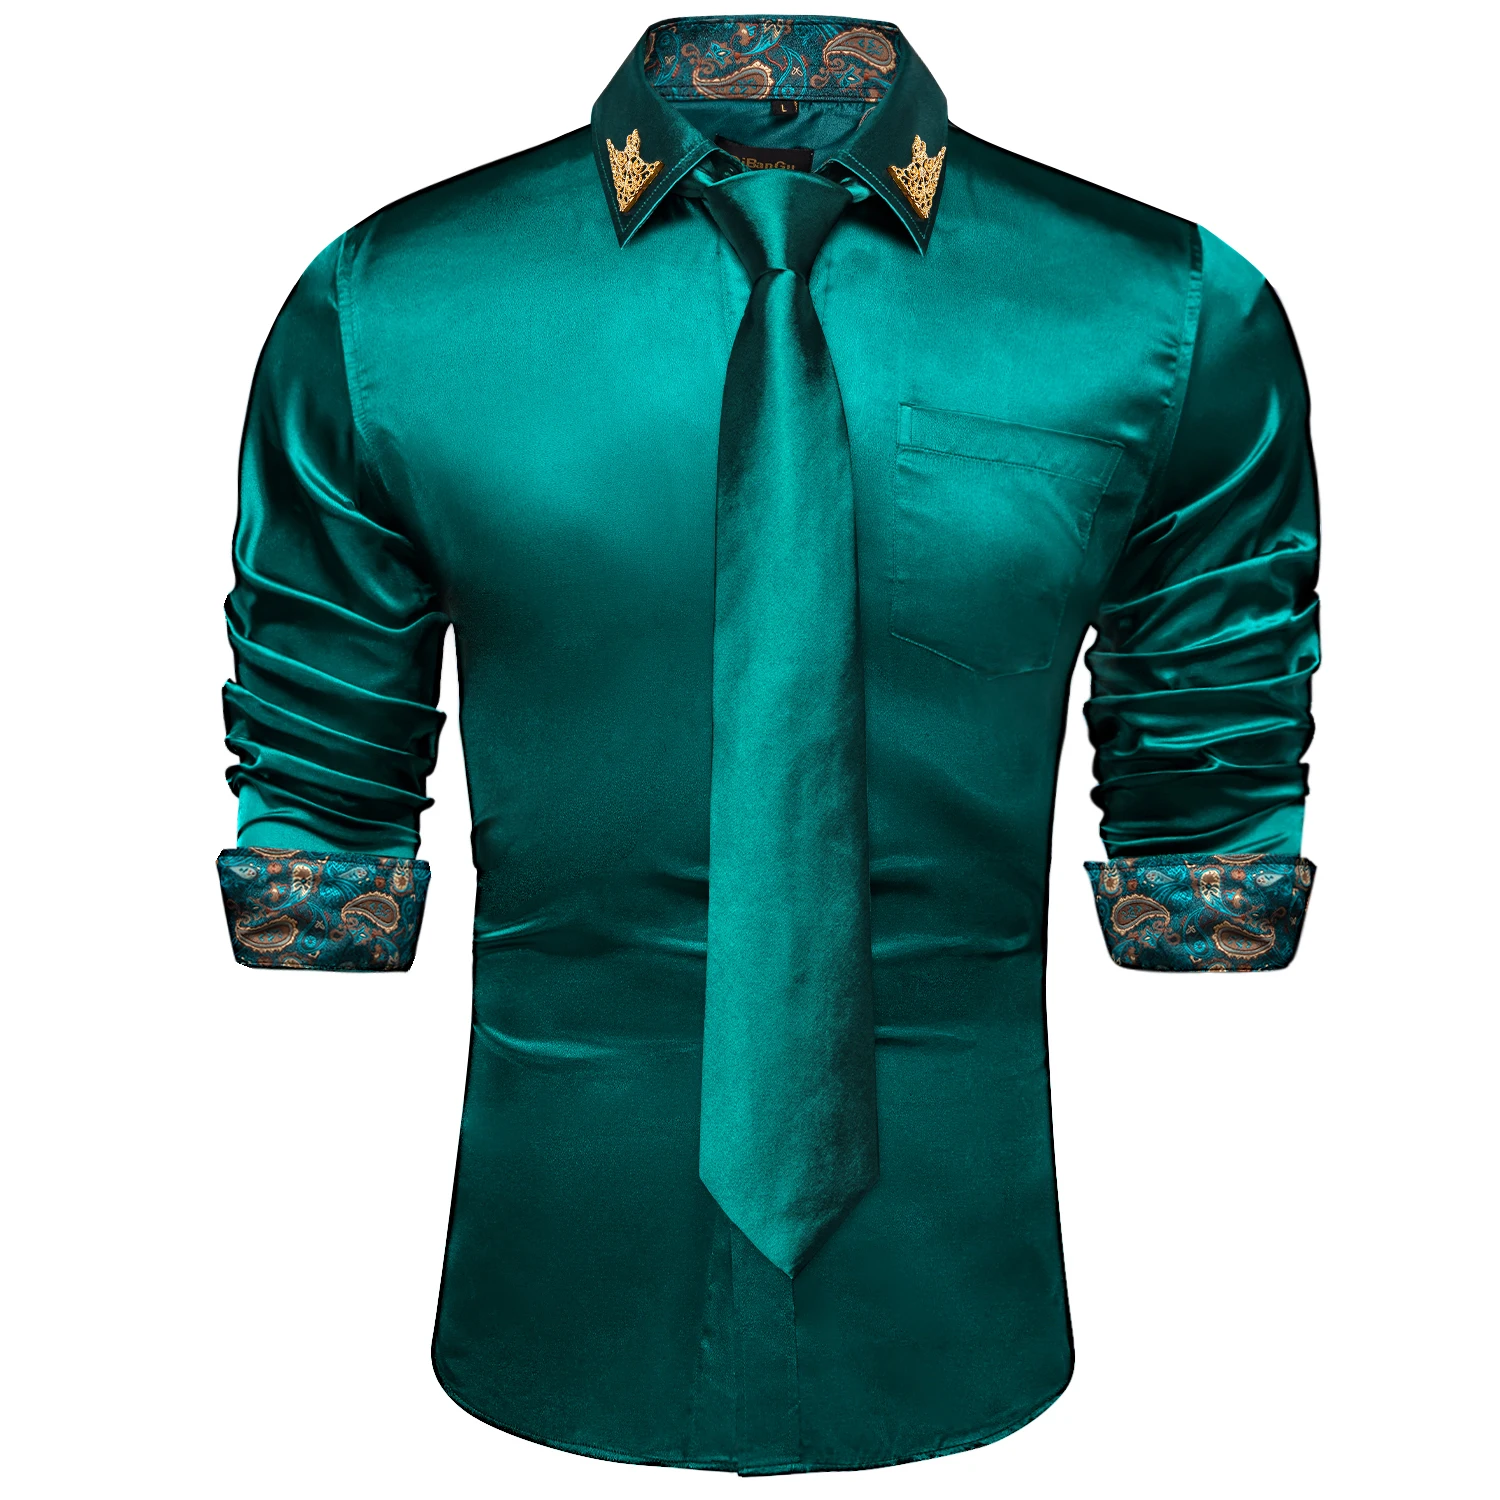 Tanio Wysokiej jakości wesele zielone koszule dla mężczyzn